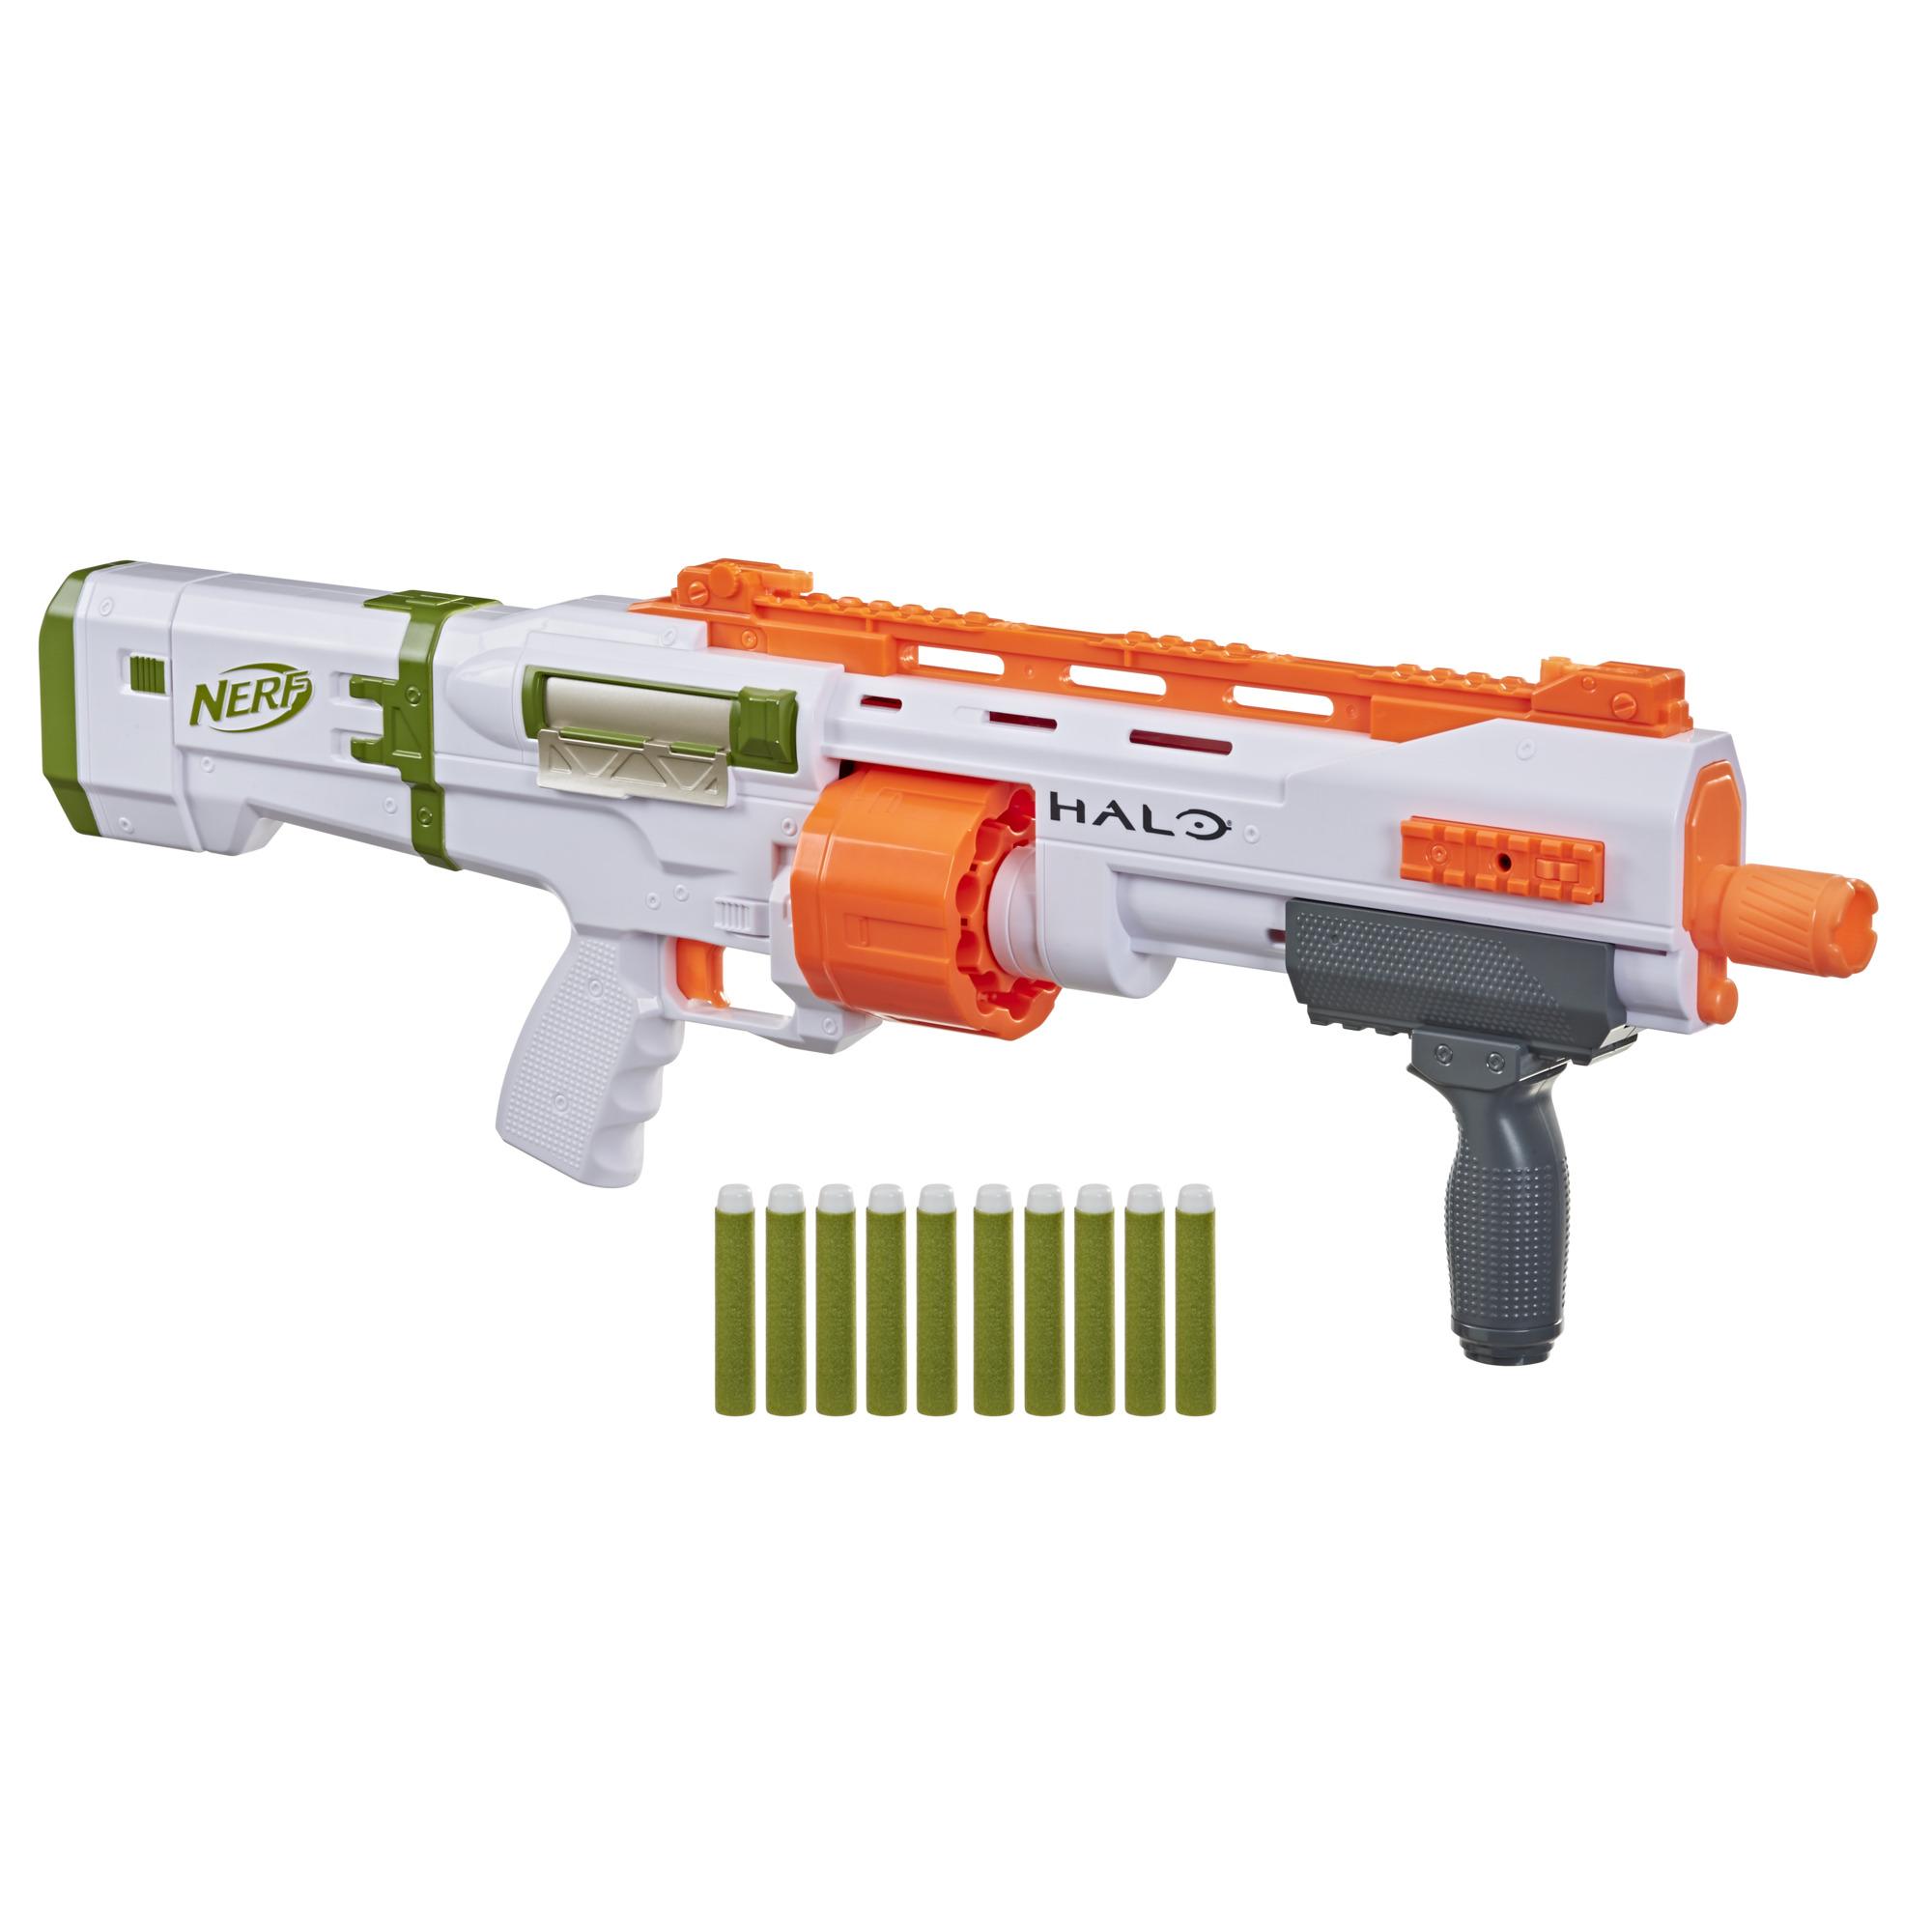 Nerf Halo Bulldog SG Blaster – Pump-Action, 10-Dart Trommel, Tactical Rail Steckschienen, 10 Nerf Darts, Skin-Code